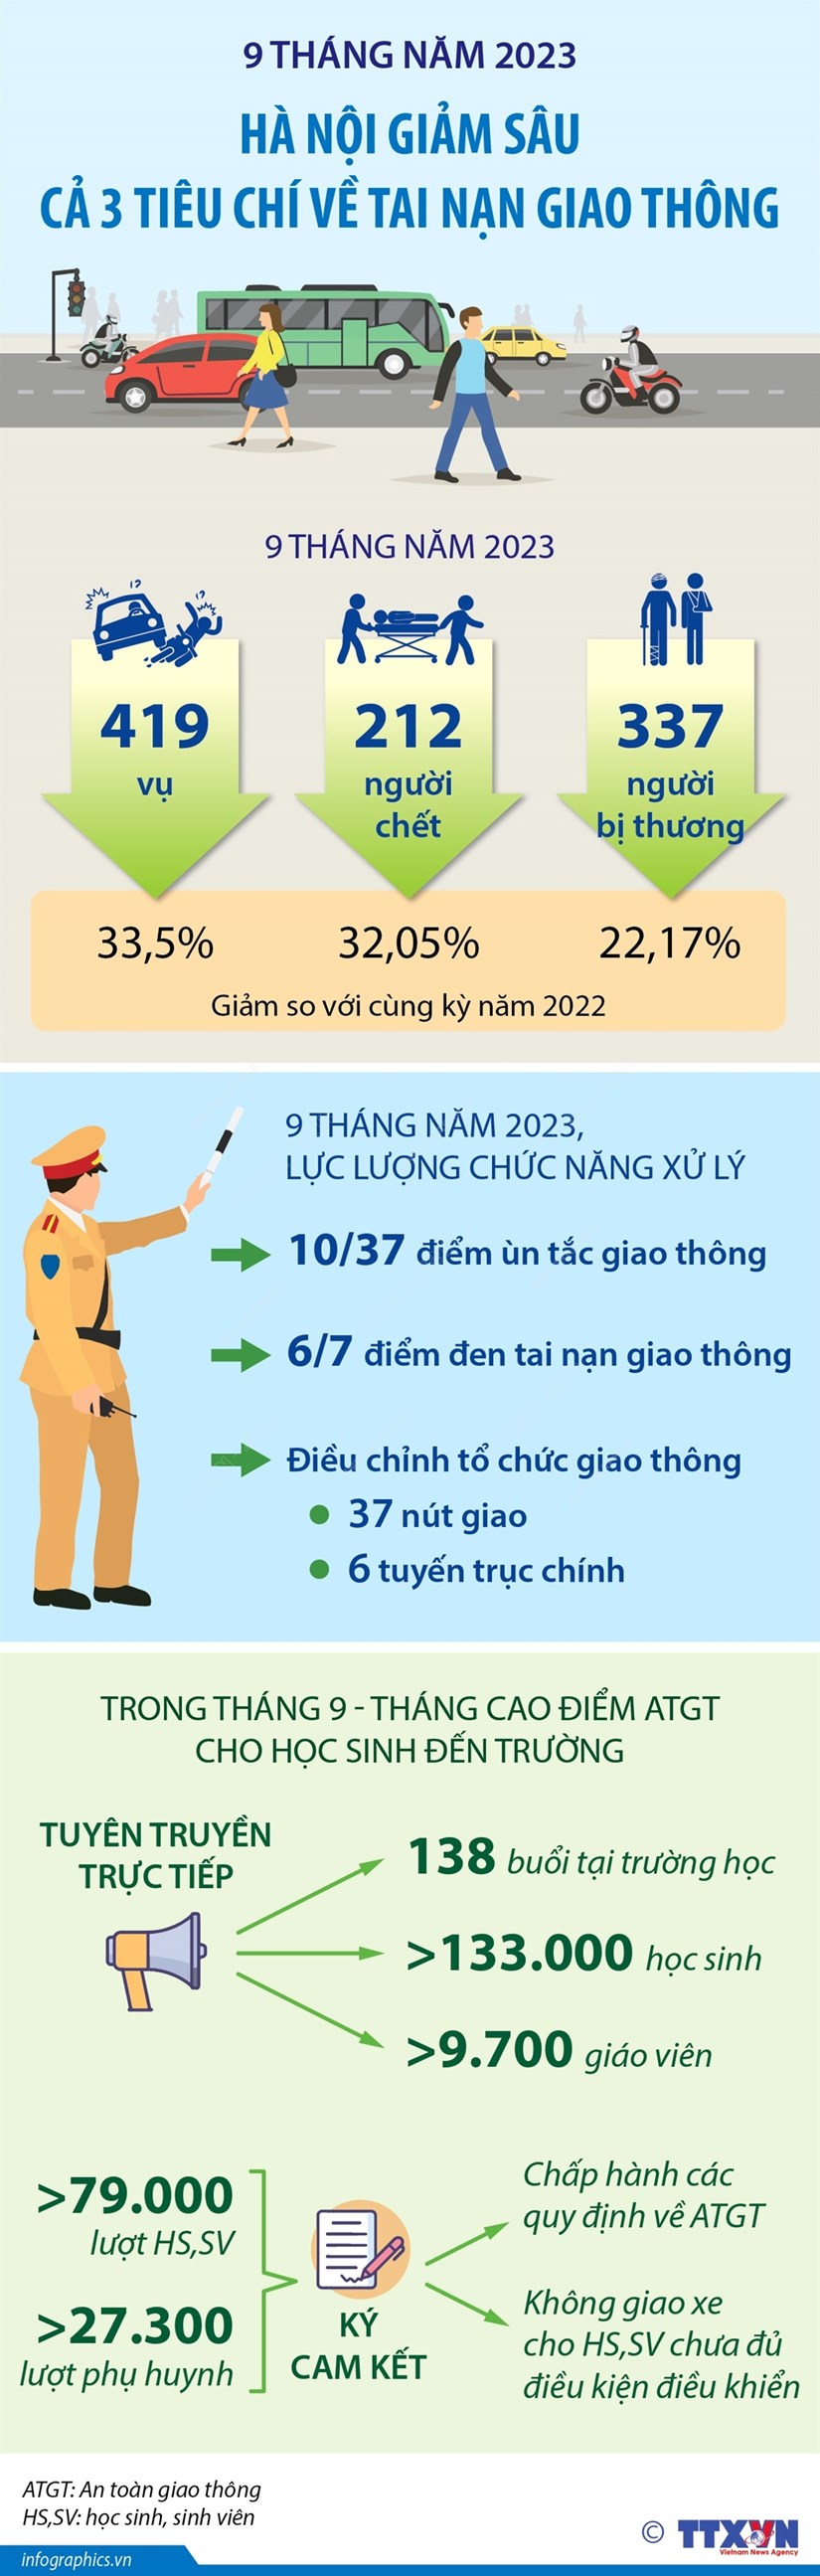 Hà Nội giảm sâu cả 3 tiêu chí về tai nạn giao thông trong 9 tháng qua - ảnh 1